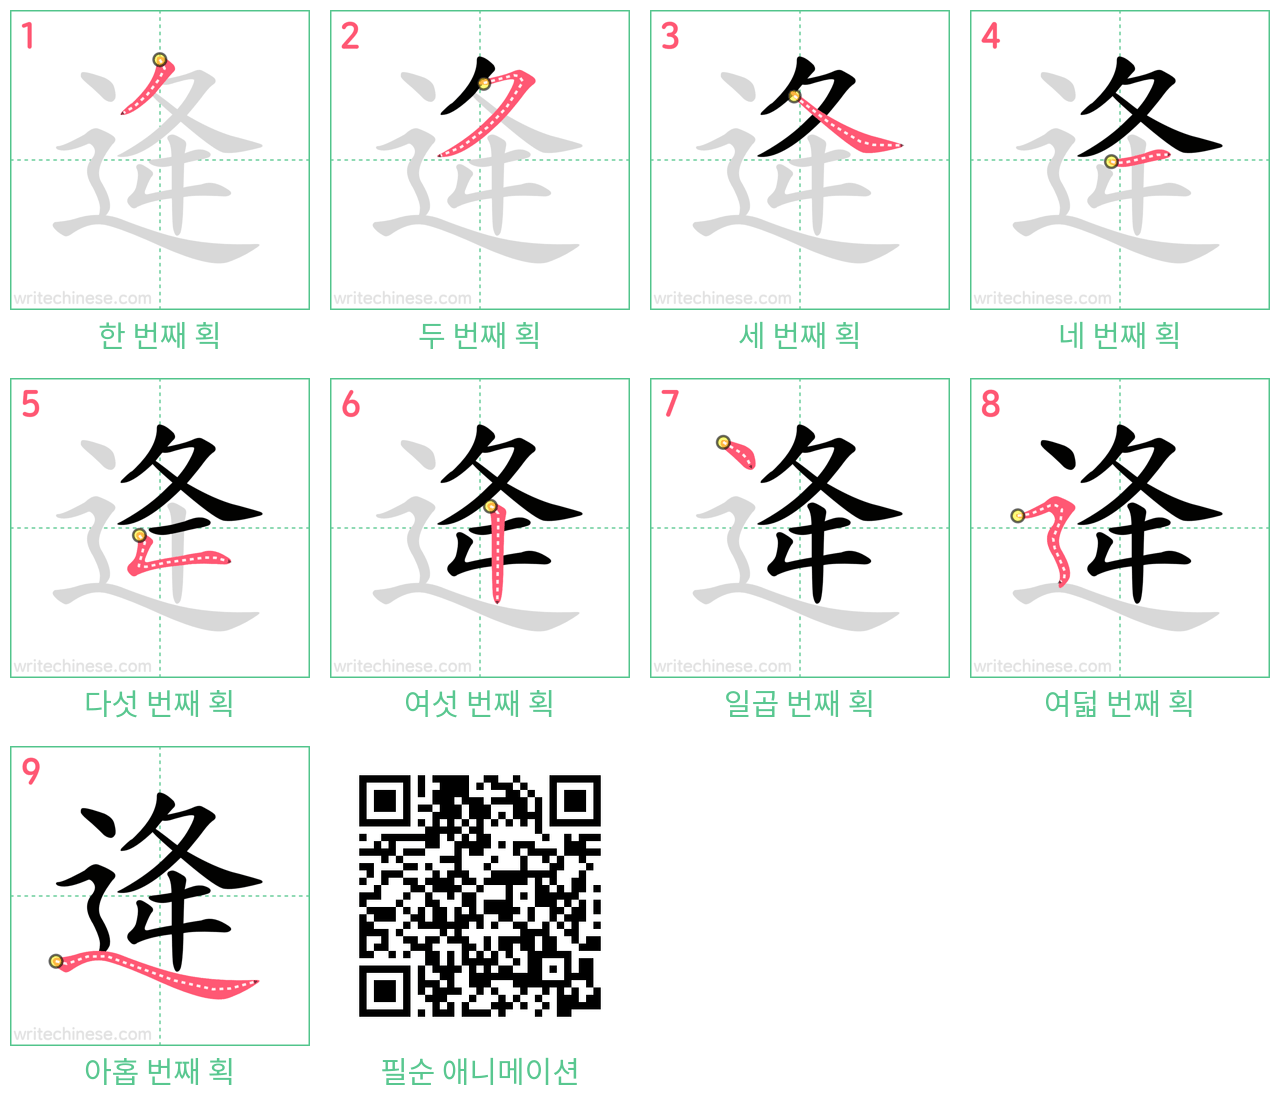 逄 step-by-step stroke order diagrams